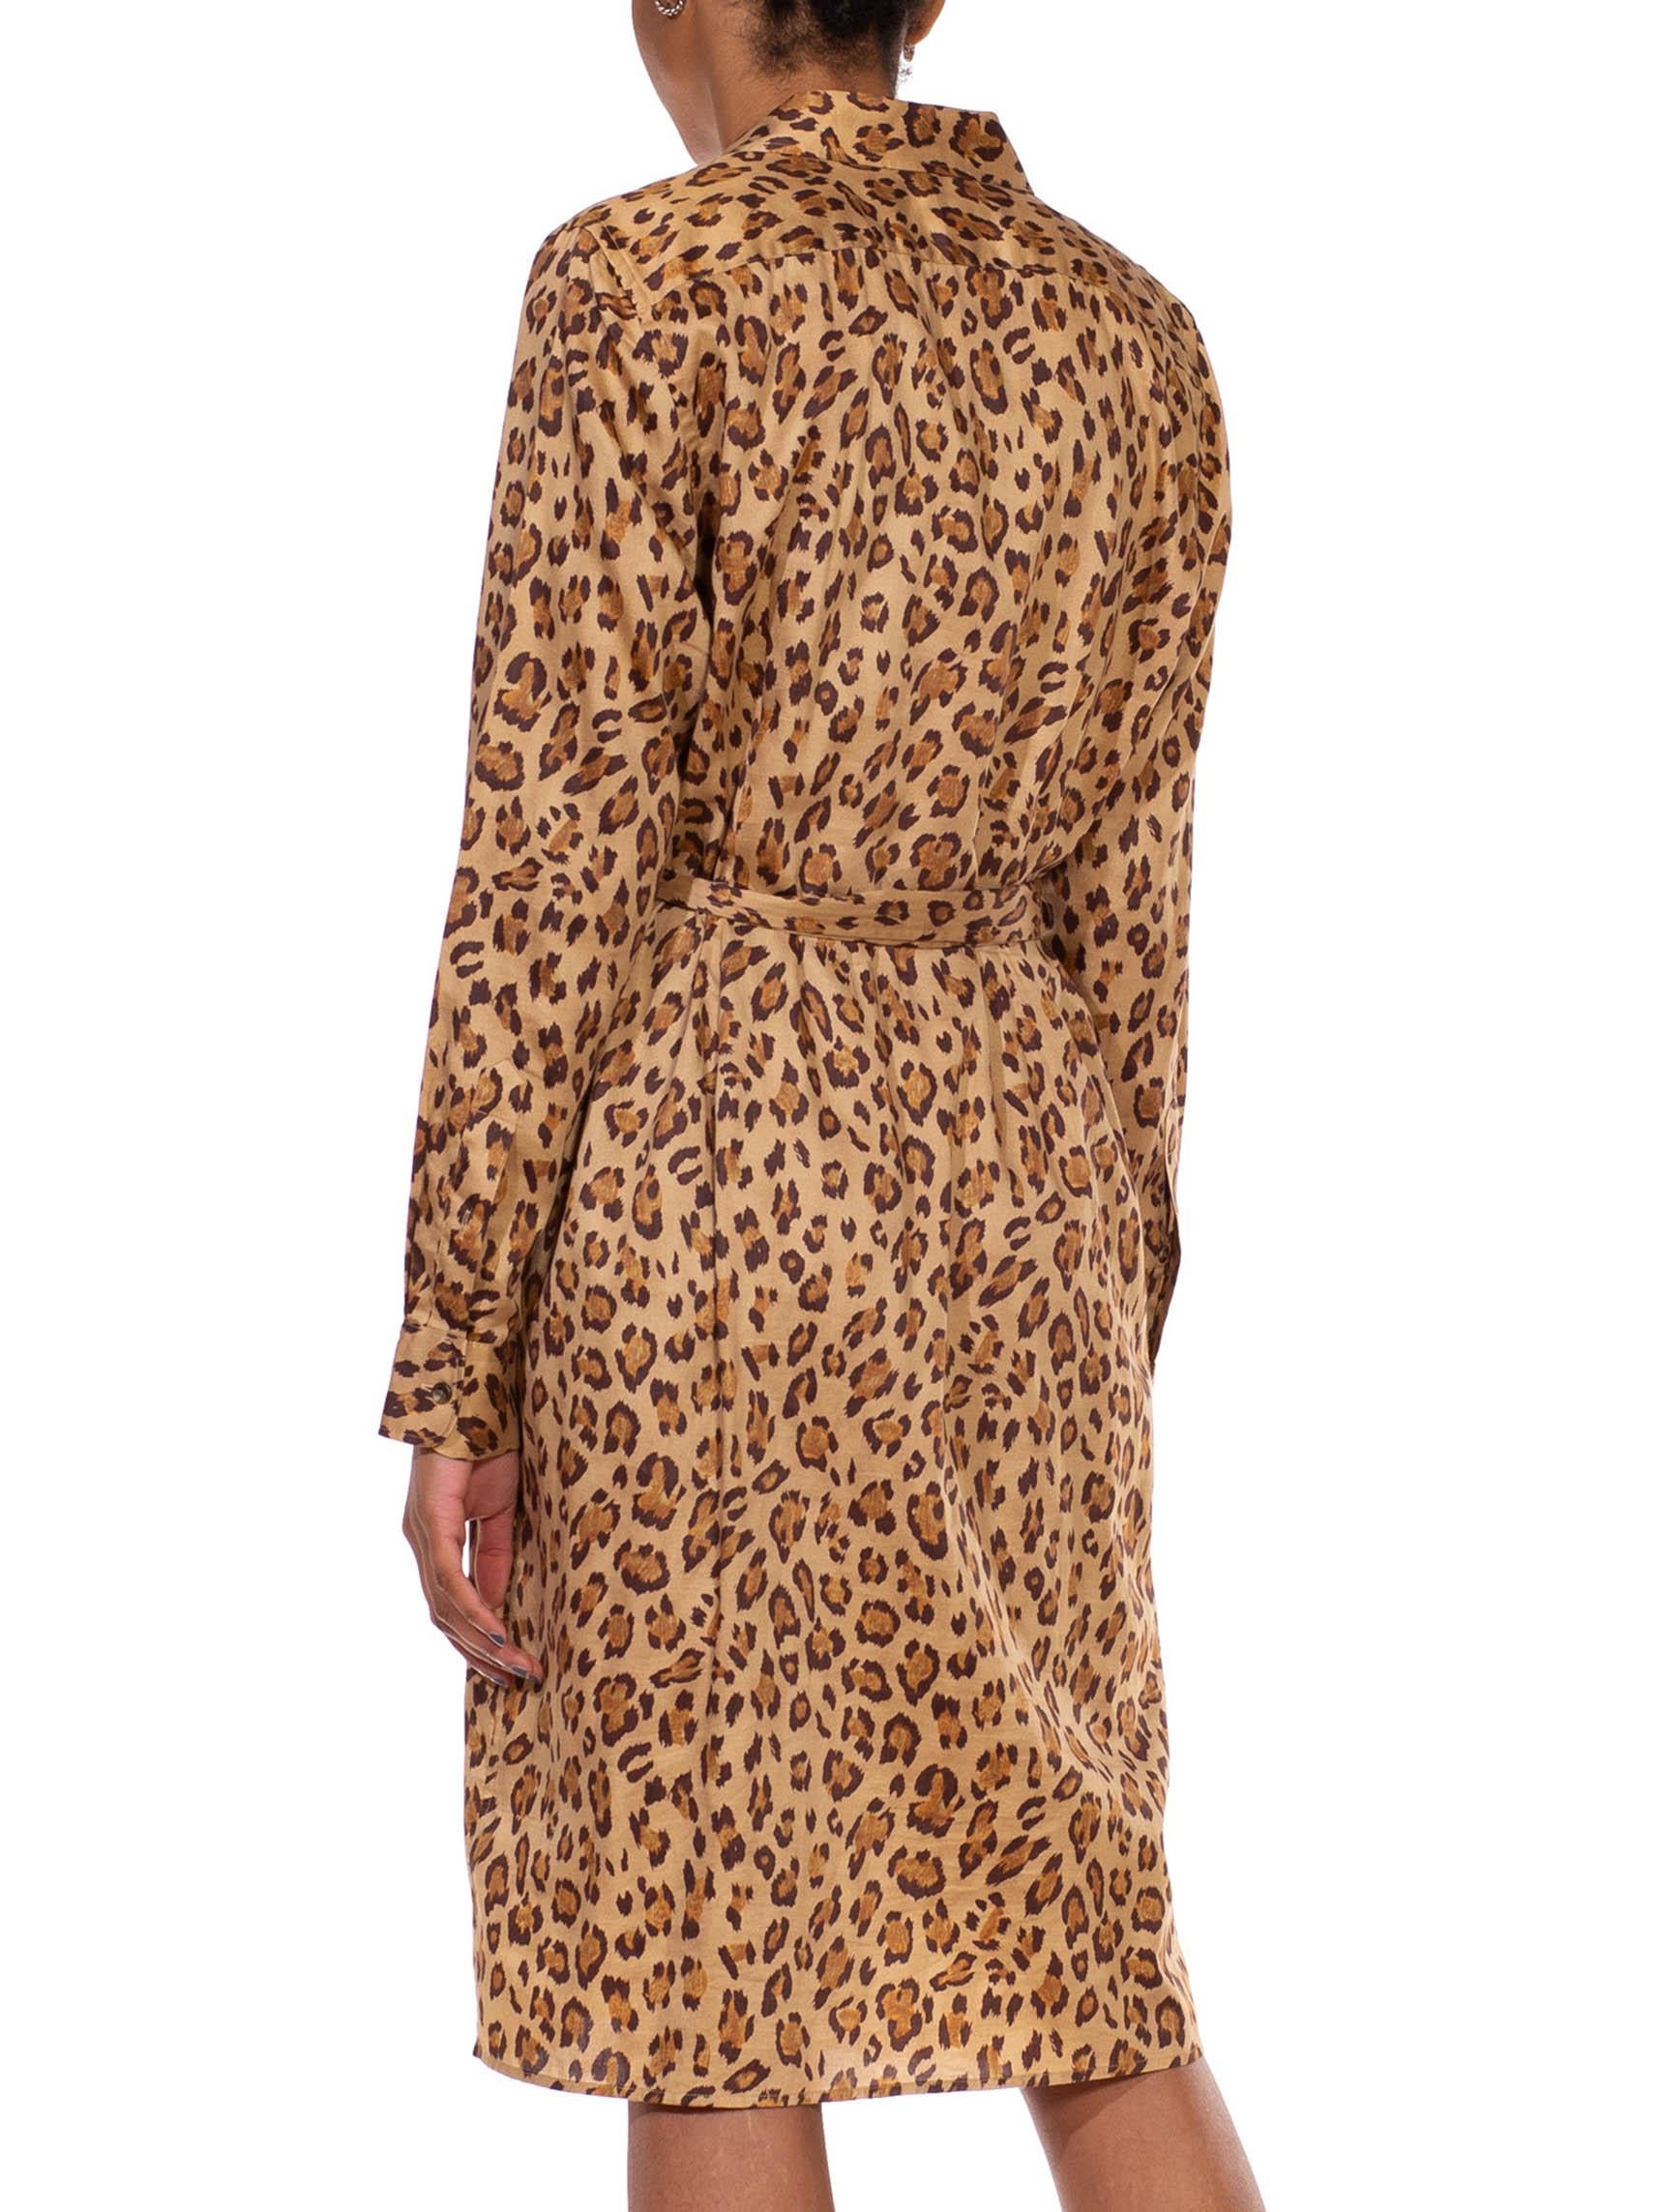 2000S RALPH LAUREN Leopard Print Brown Cotton Sateen Safari Shirt Dress 3